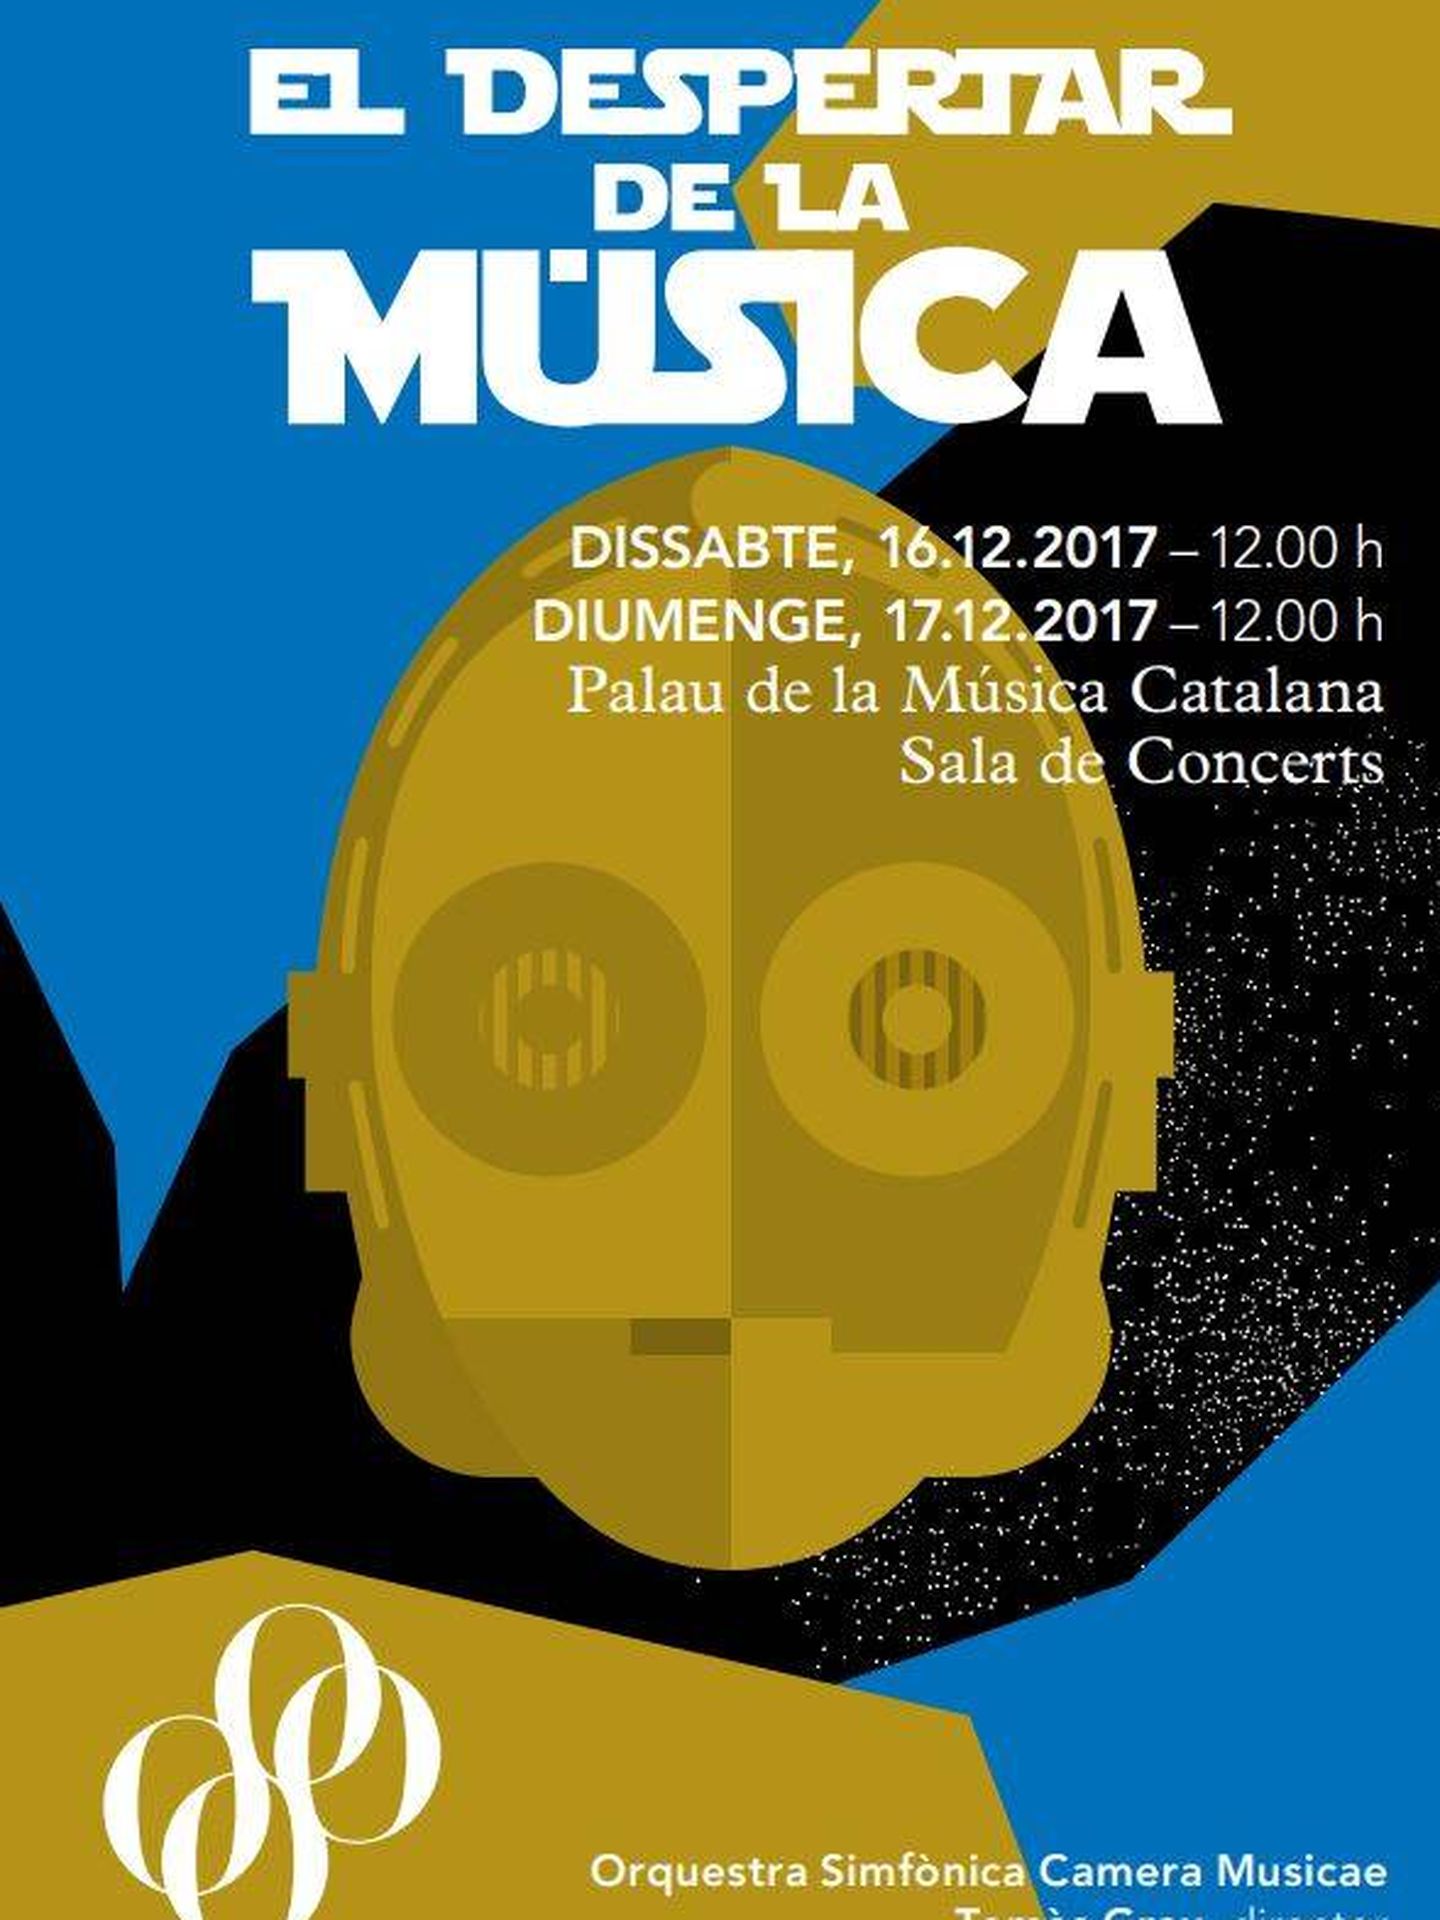 Programa de 'El despertar de la música' en el Palau de Barcelona